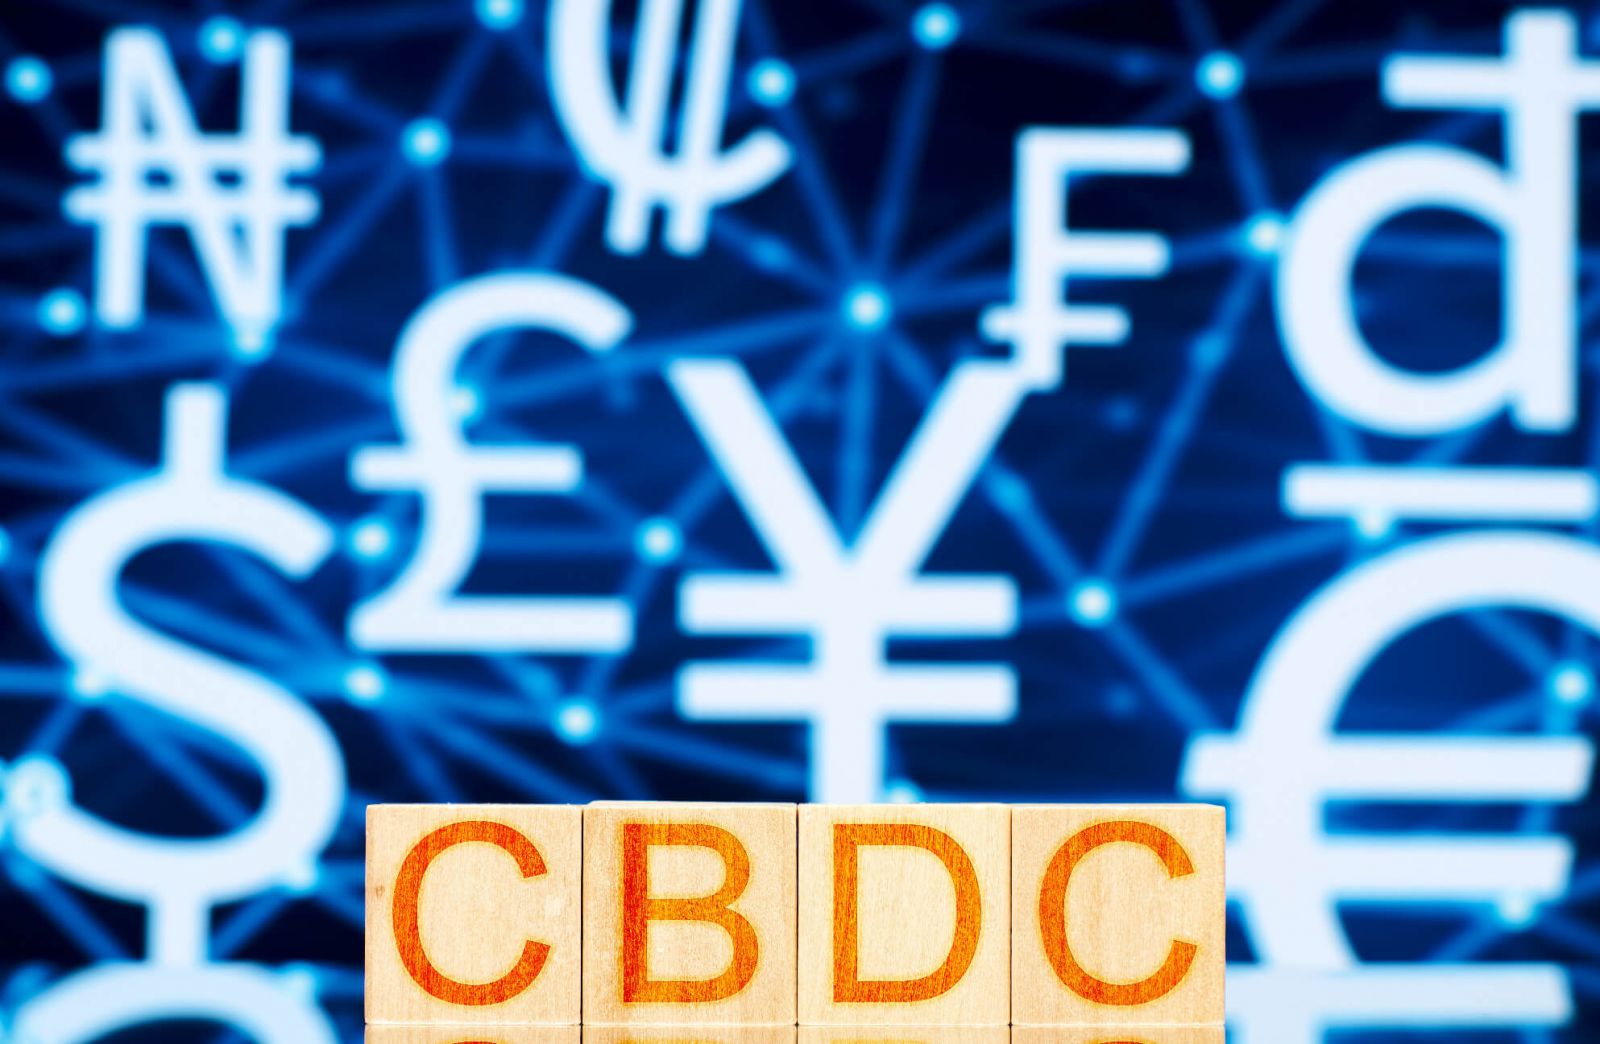 tin tưởng vào tiền tệ kỹ thuật số của Ngân hàng Trung ương (CBDC), mà một số quốc gia bao gồm Hoa Kỳ và Trung Quốc đang phát triển